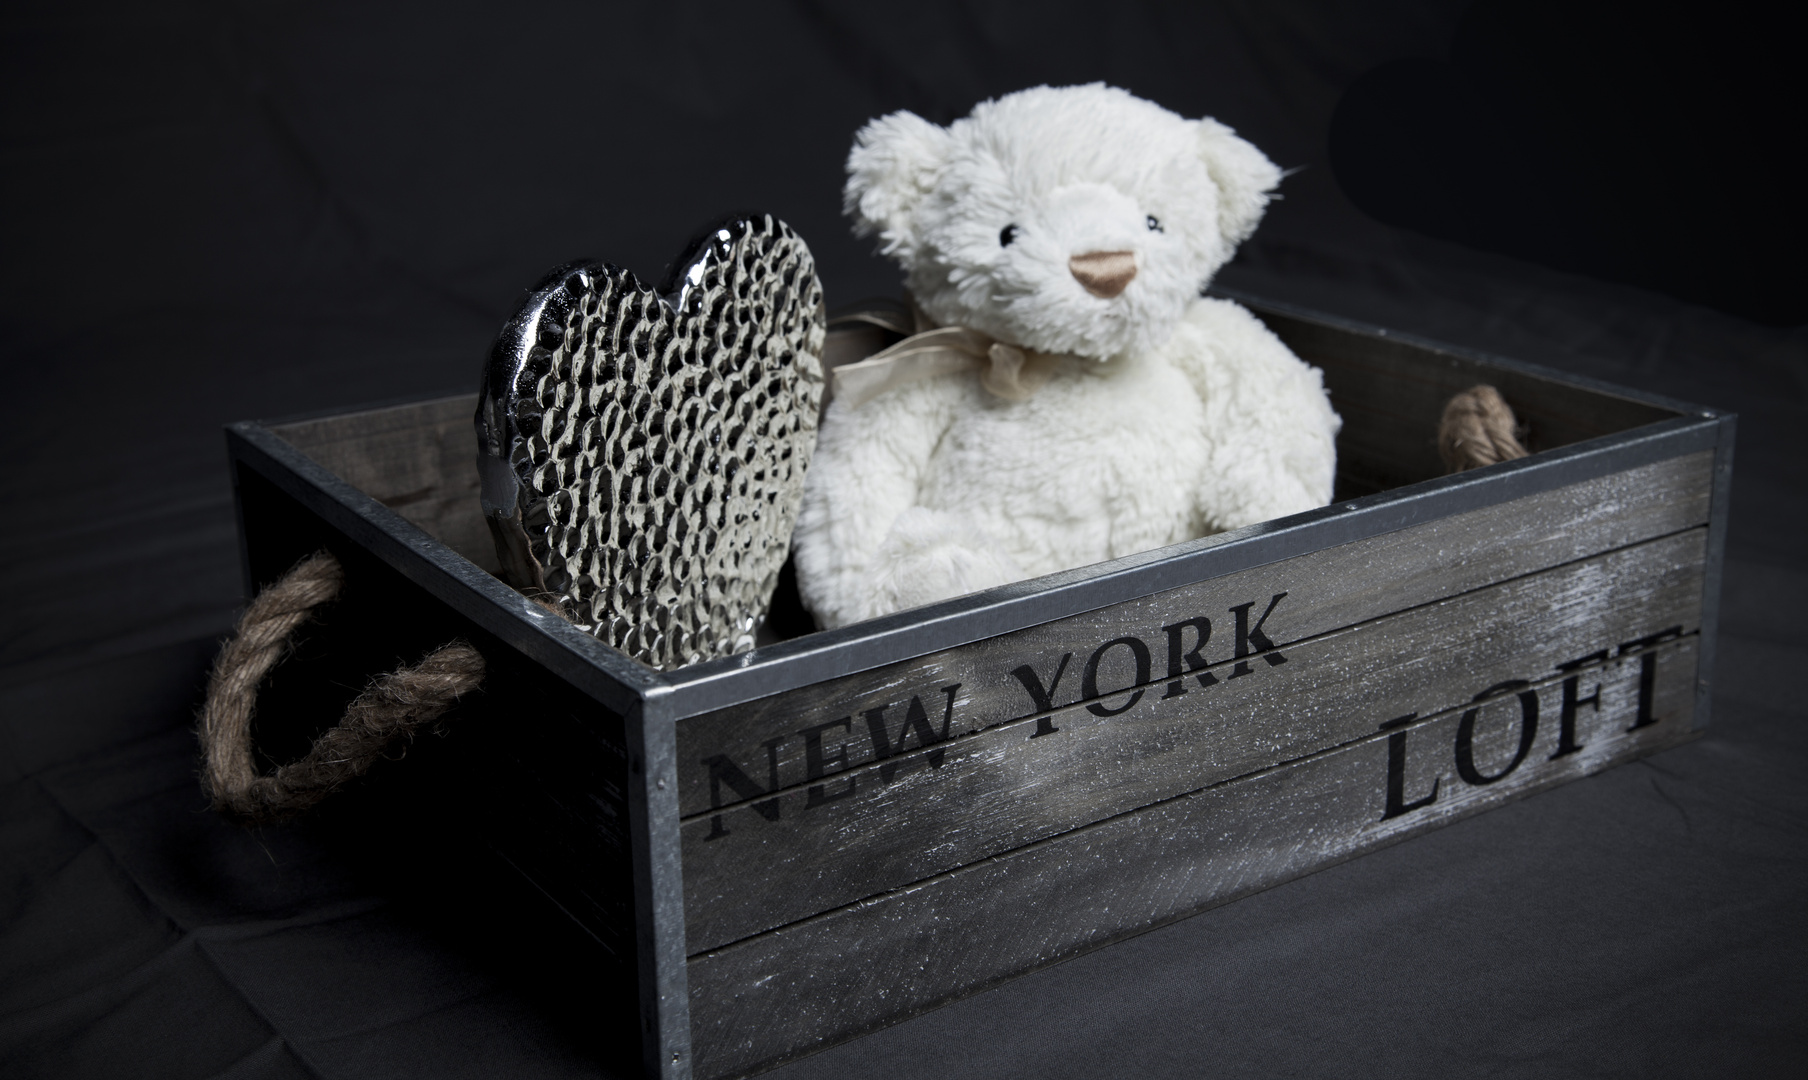 New York Loft Teddy